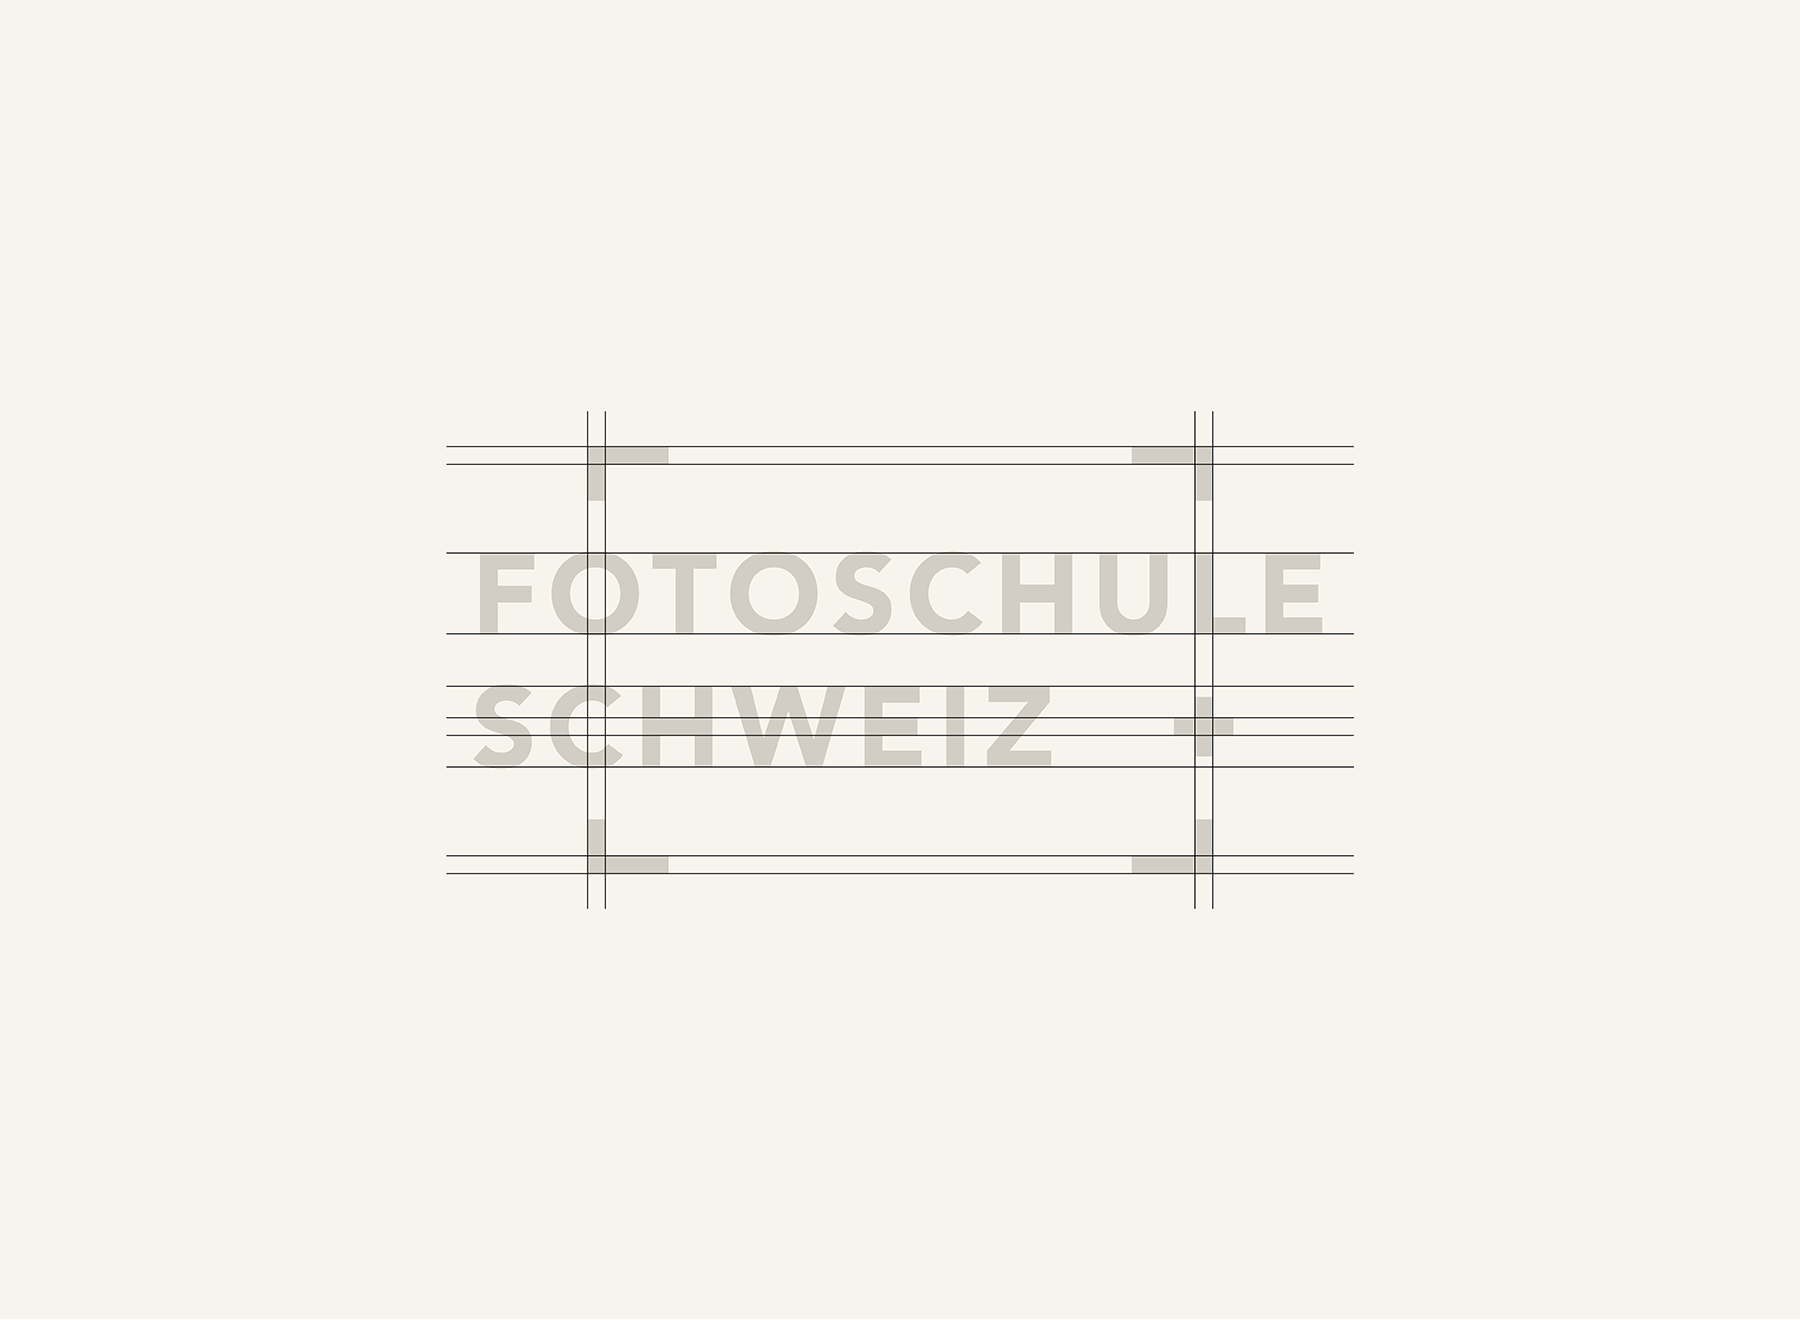 Fotoschule Schweiz logos